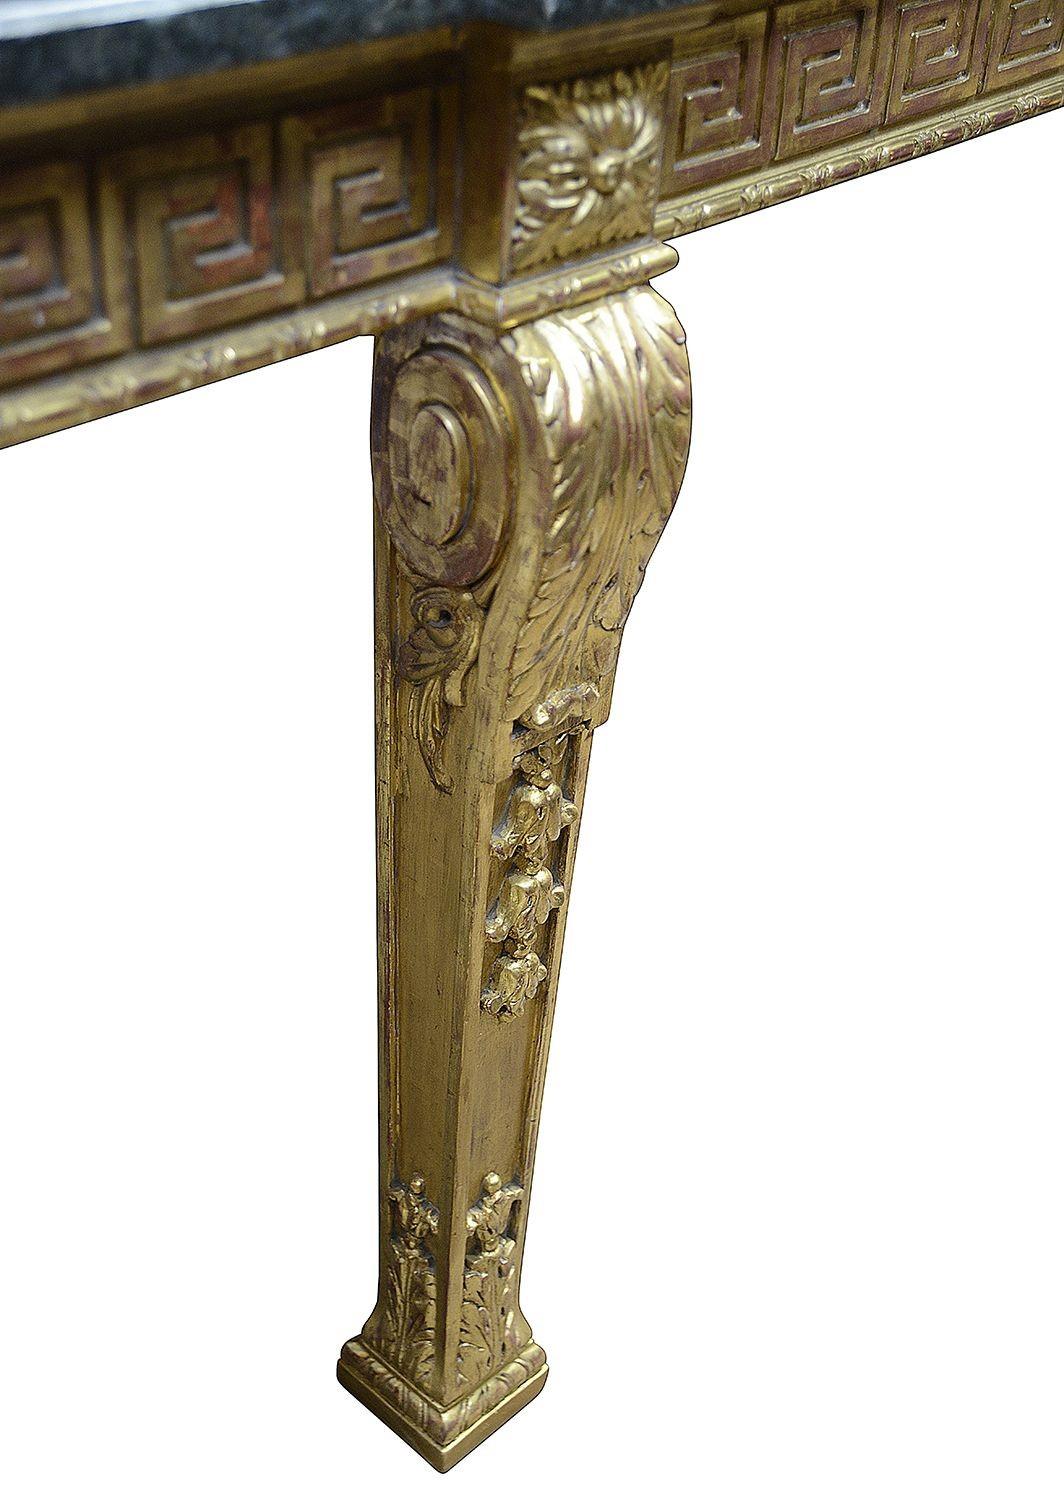 Eine sehr gute Qualität des späten 19. Jahrhunderts klassischen Adams beeinflusst geschnitzt vergoldet, Marmor gekrönt Tisch, mit griechischen Schlüssel-Muster, um den Fries, die eine zentrale Schublade hat, scrolling Akanthusblatt Dekoration auf